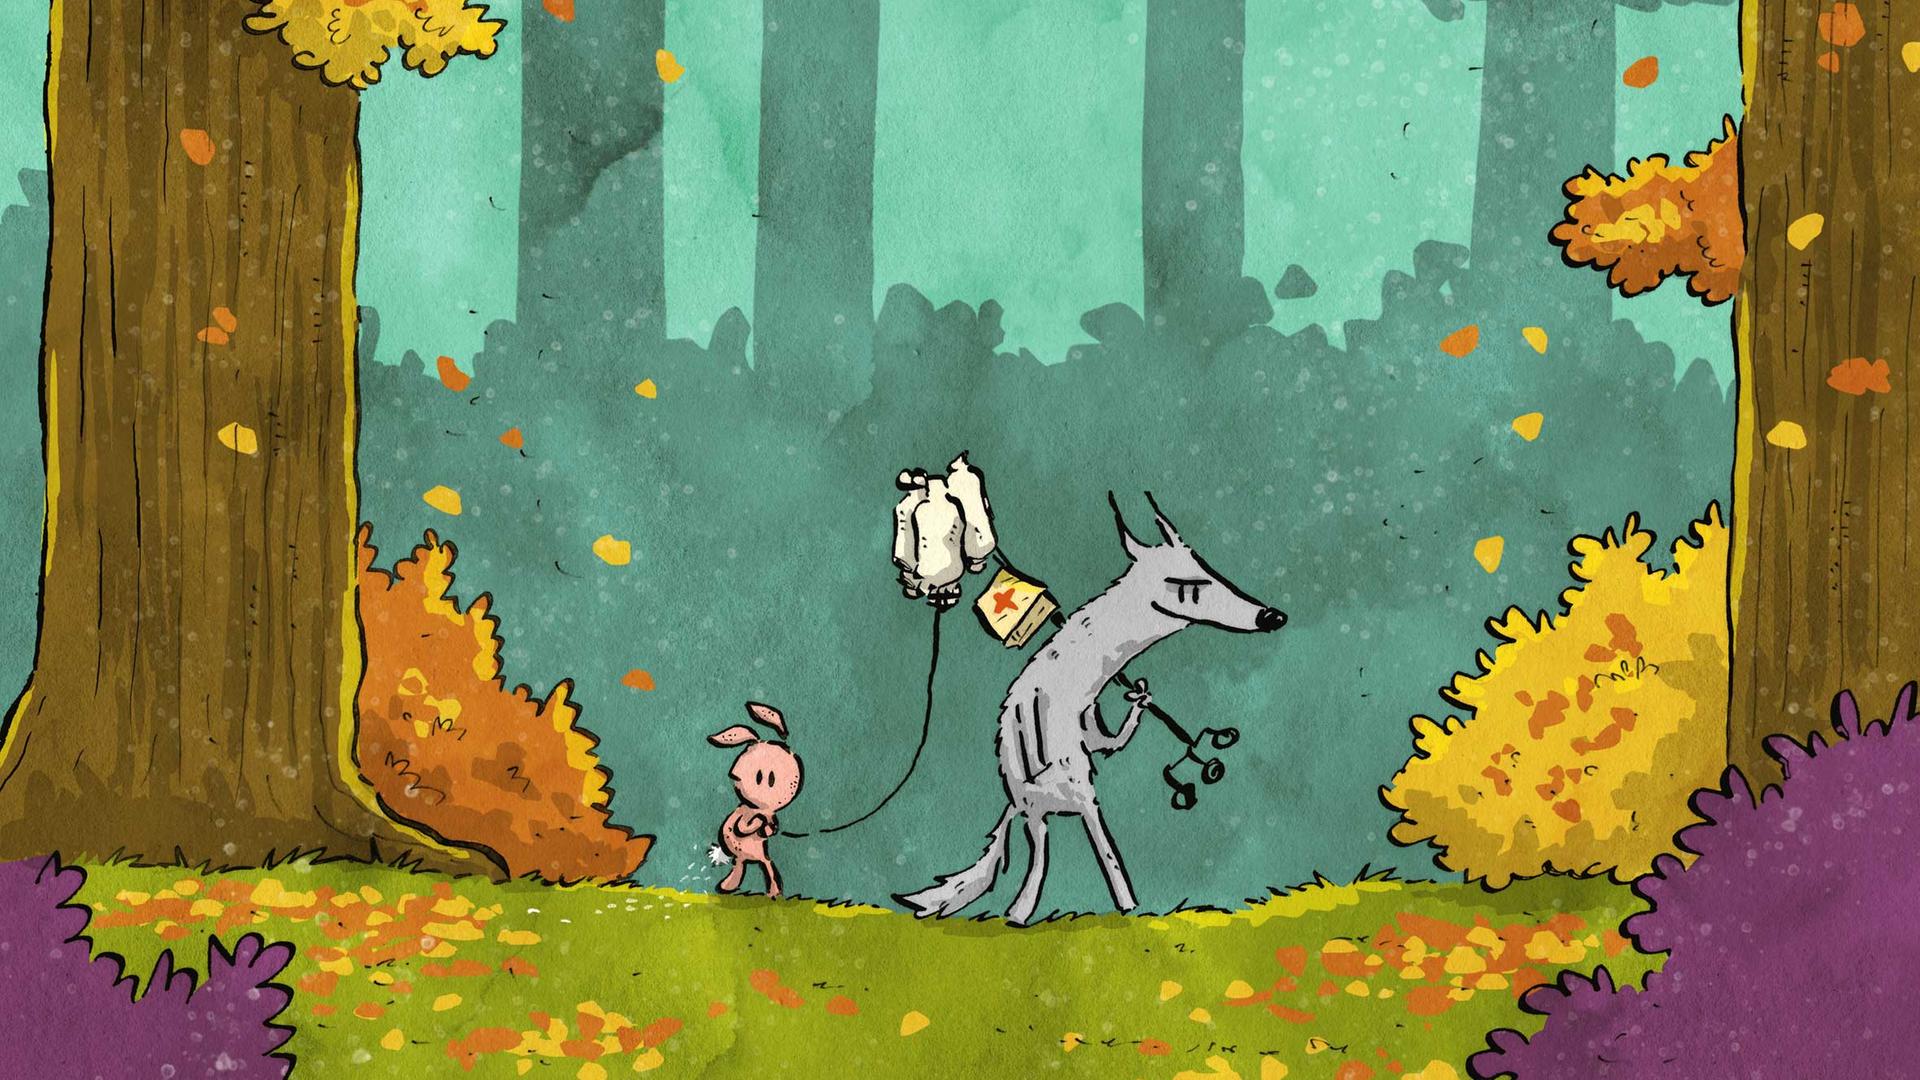 Seite aus dem Comic "Trip mit Tropf" von Josephine Mark. Zu sehen sind ein Hase mit einem Tropf sowie ein Wolf in einem Wald.